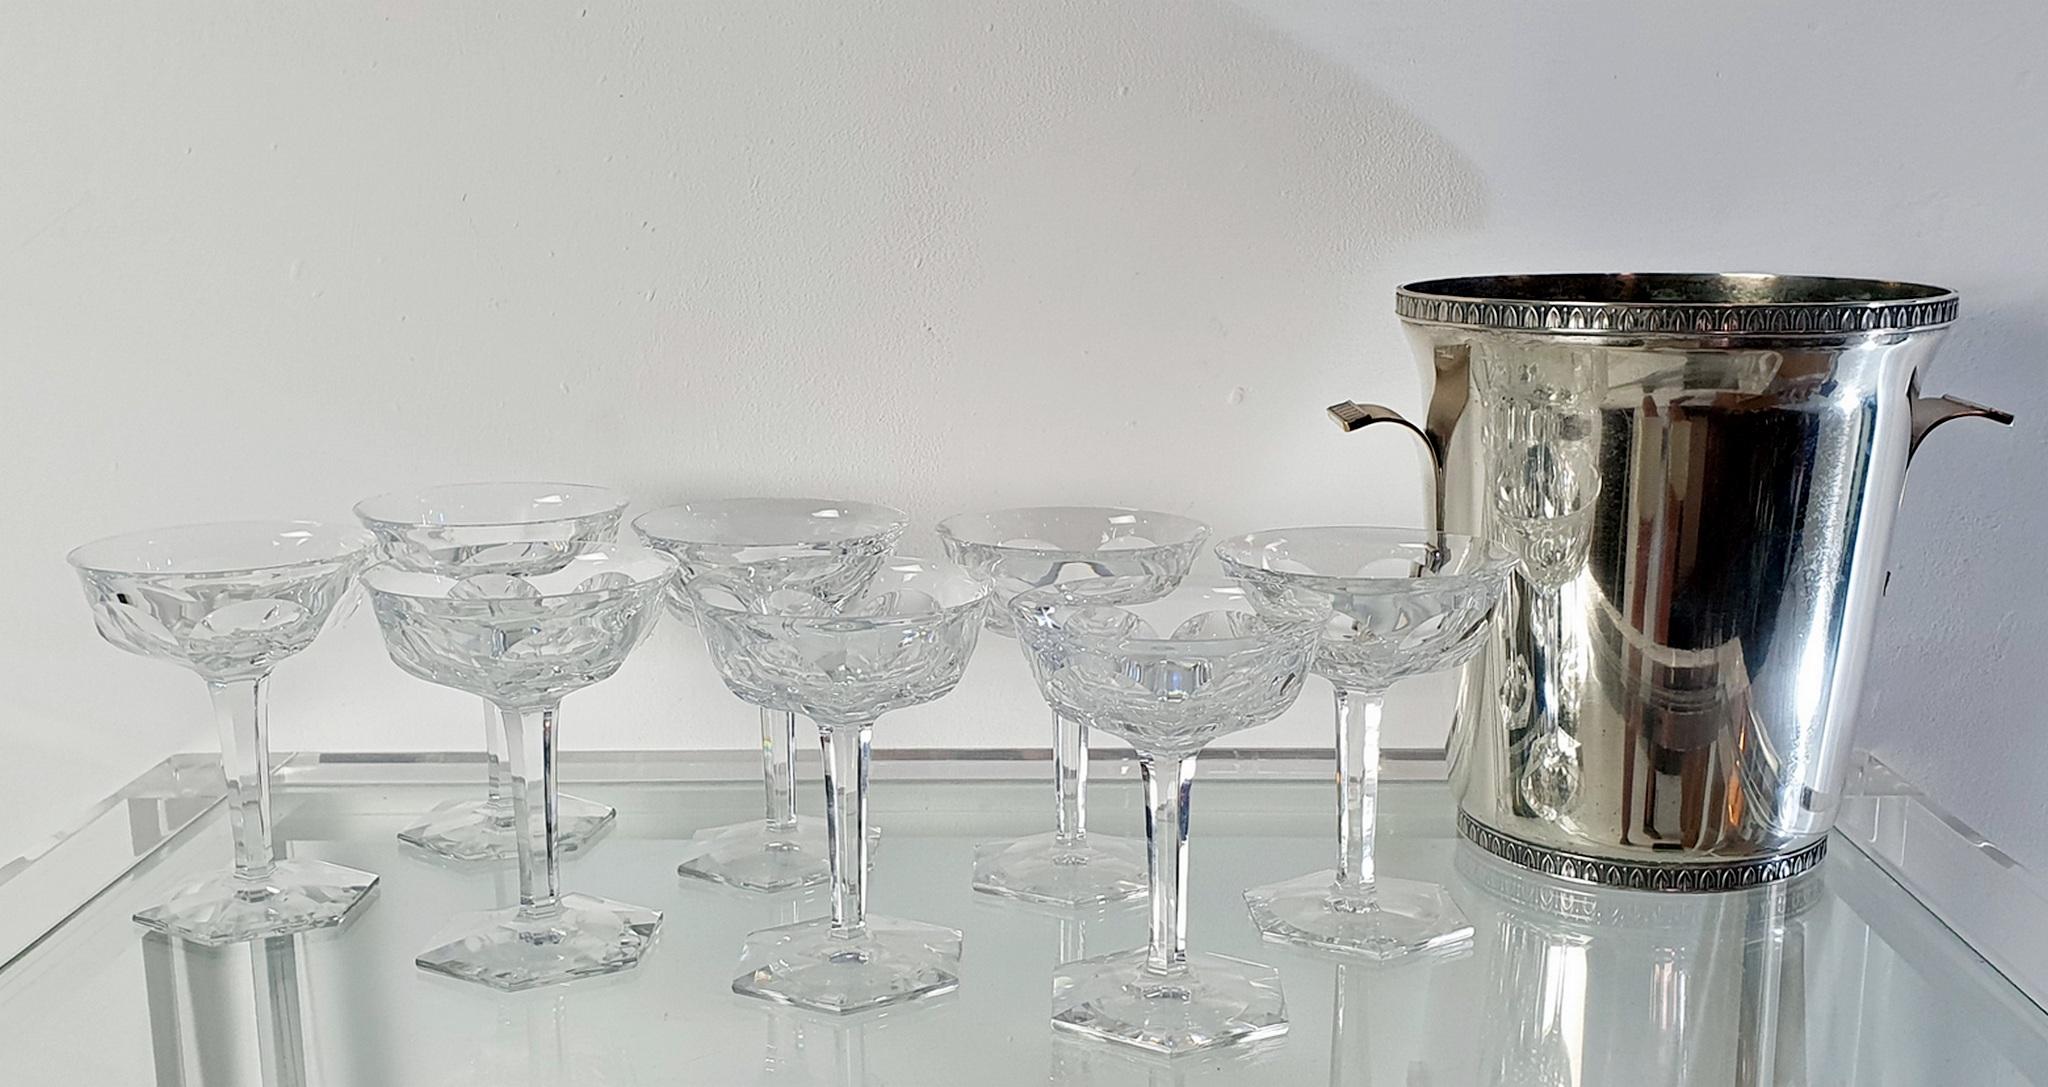 Ein wunderschöner Satz von 8 Harcourt 1841 Champagner-Coupe-Gläsern von Baccarat, Frankreich. Markiert Baccarat, Frankreich im Boden. Keine Absplitterungen oder Beschädigungen.

Rein, kraftvoll und elegant zugleich, auf seinem sechseckigen Sockel,